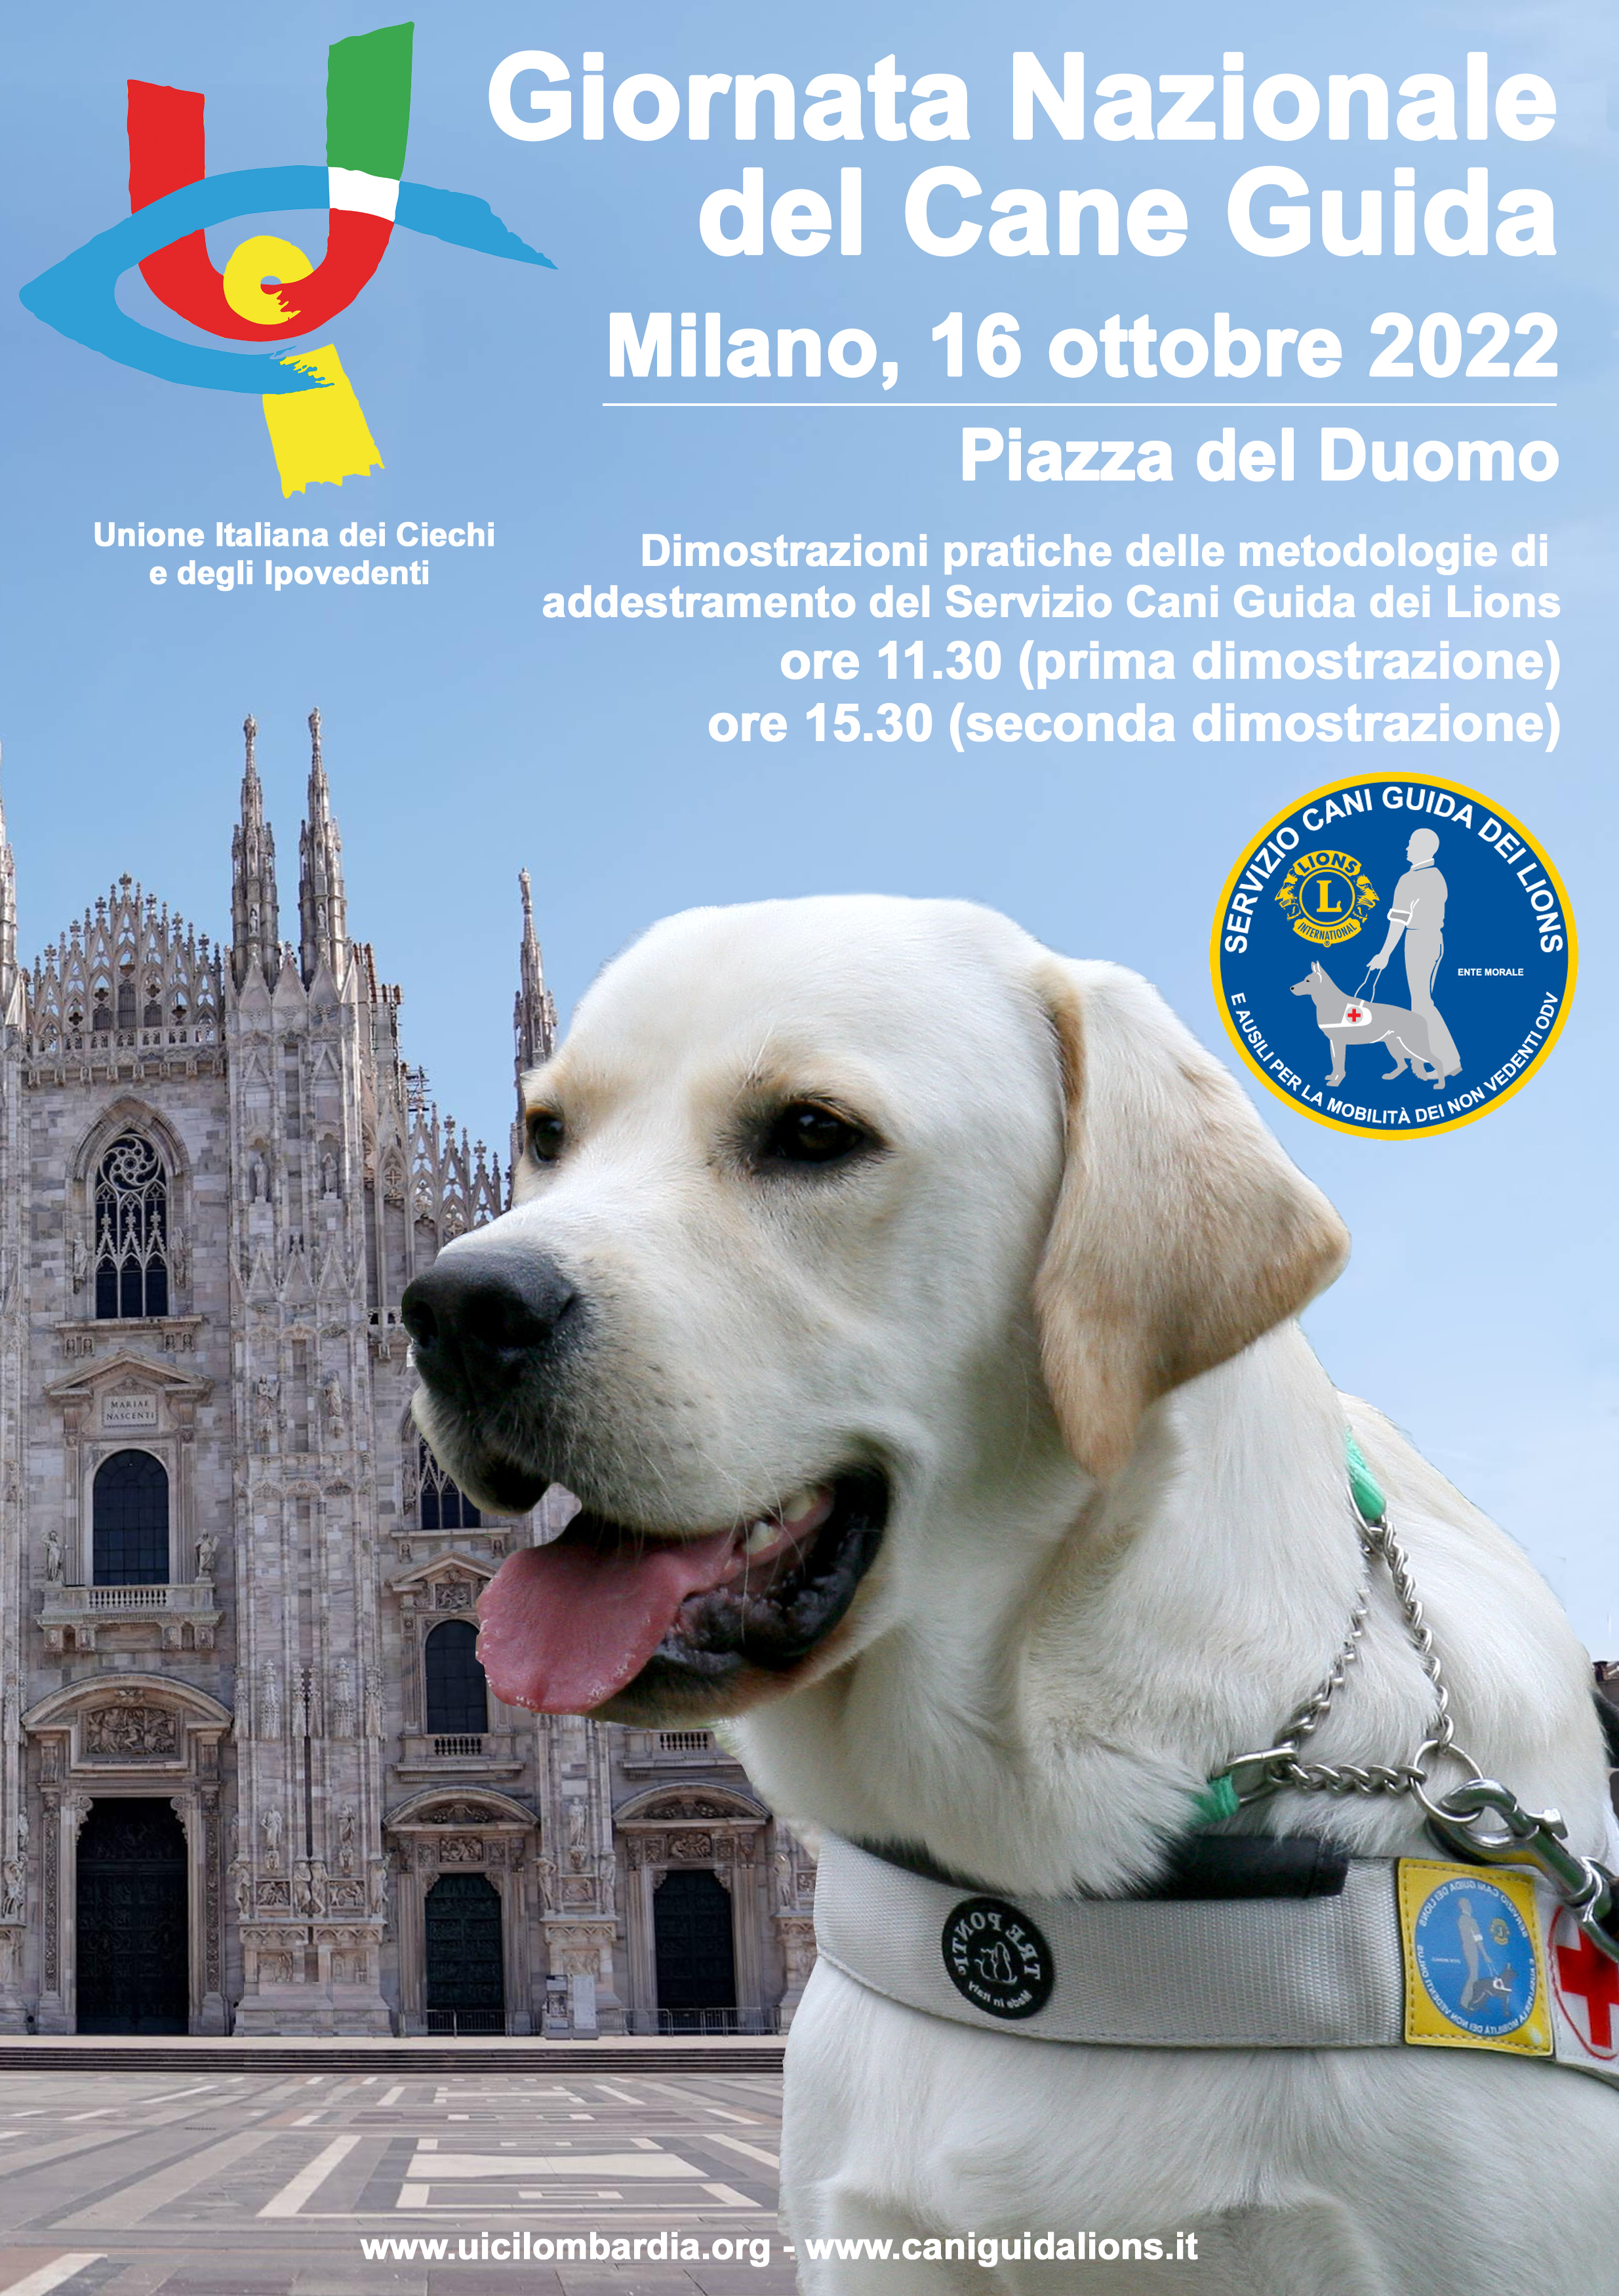 Giornata Nazionale del Cane Guida, domenica 16/10/2022 in piazza Duomo a Milano